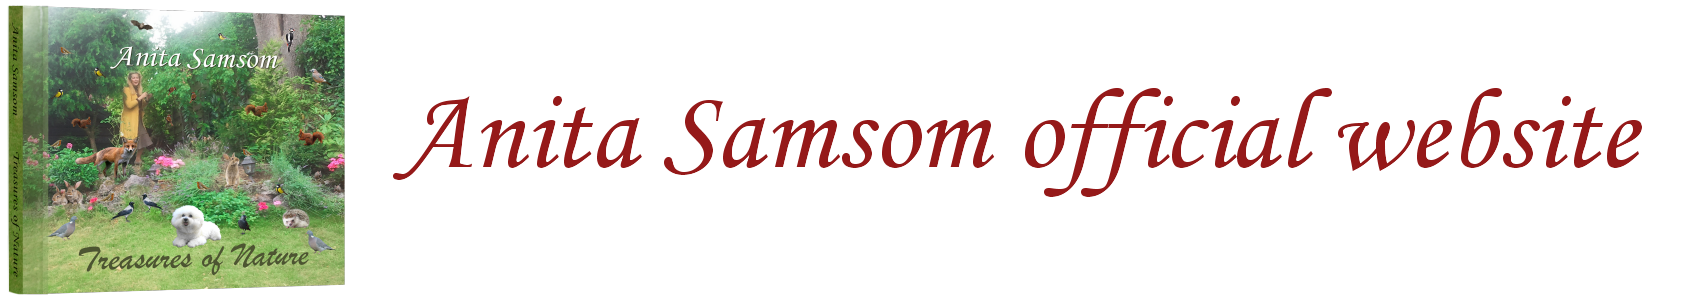 Anita Samsom Official Website